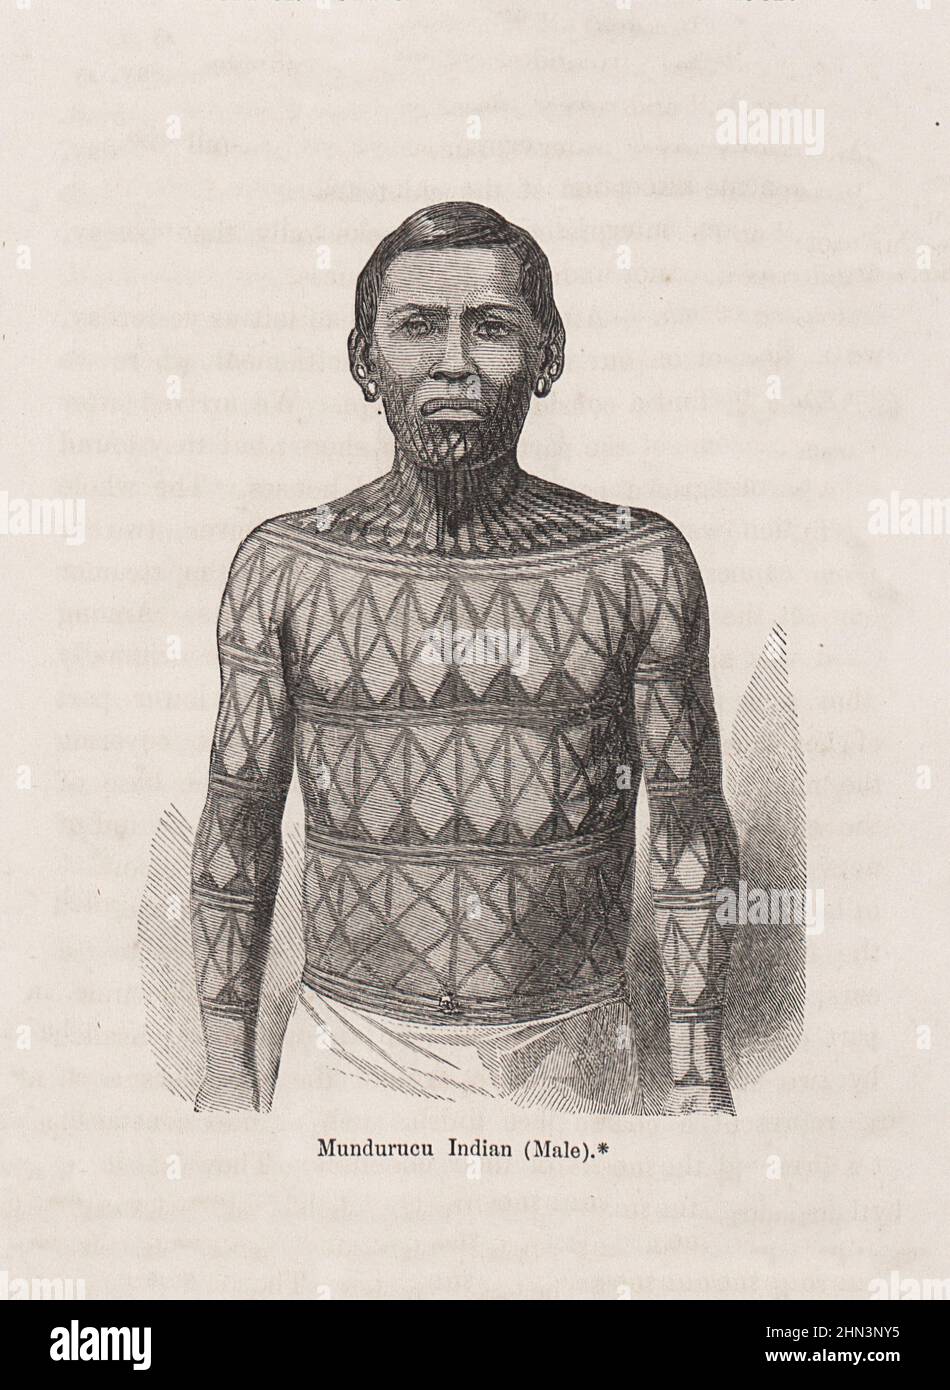 Illustration ancienne de l'Indien Mundurucu (Homme). 1868 Portrait d'un homme du peuple indigène Munduruku au Brésil Banque D'Images